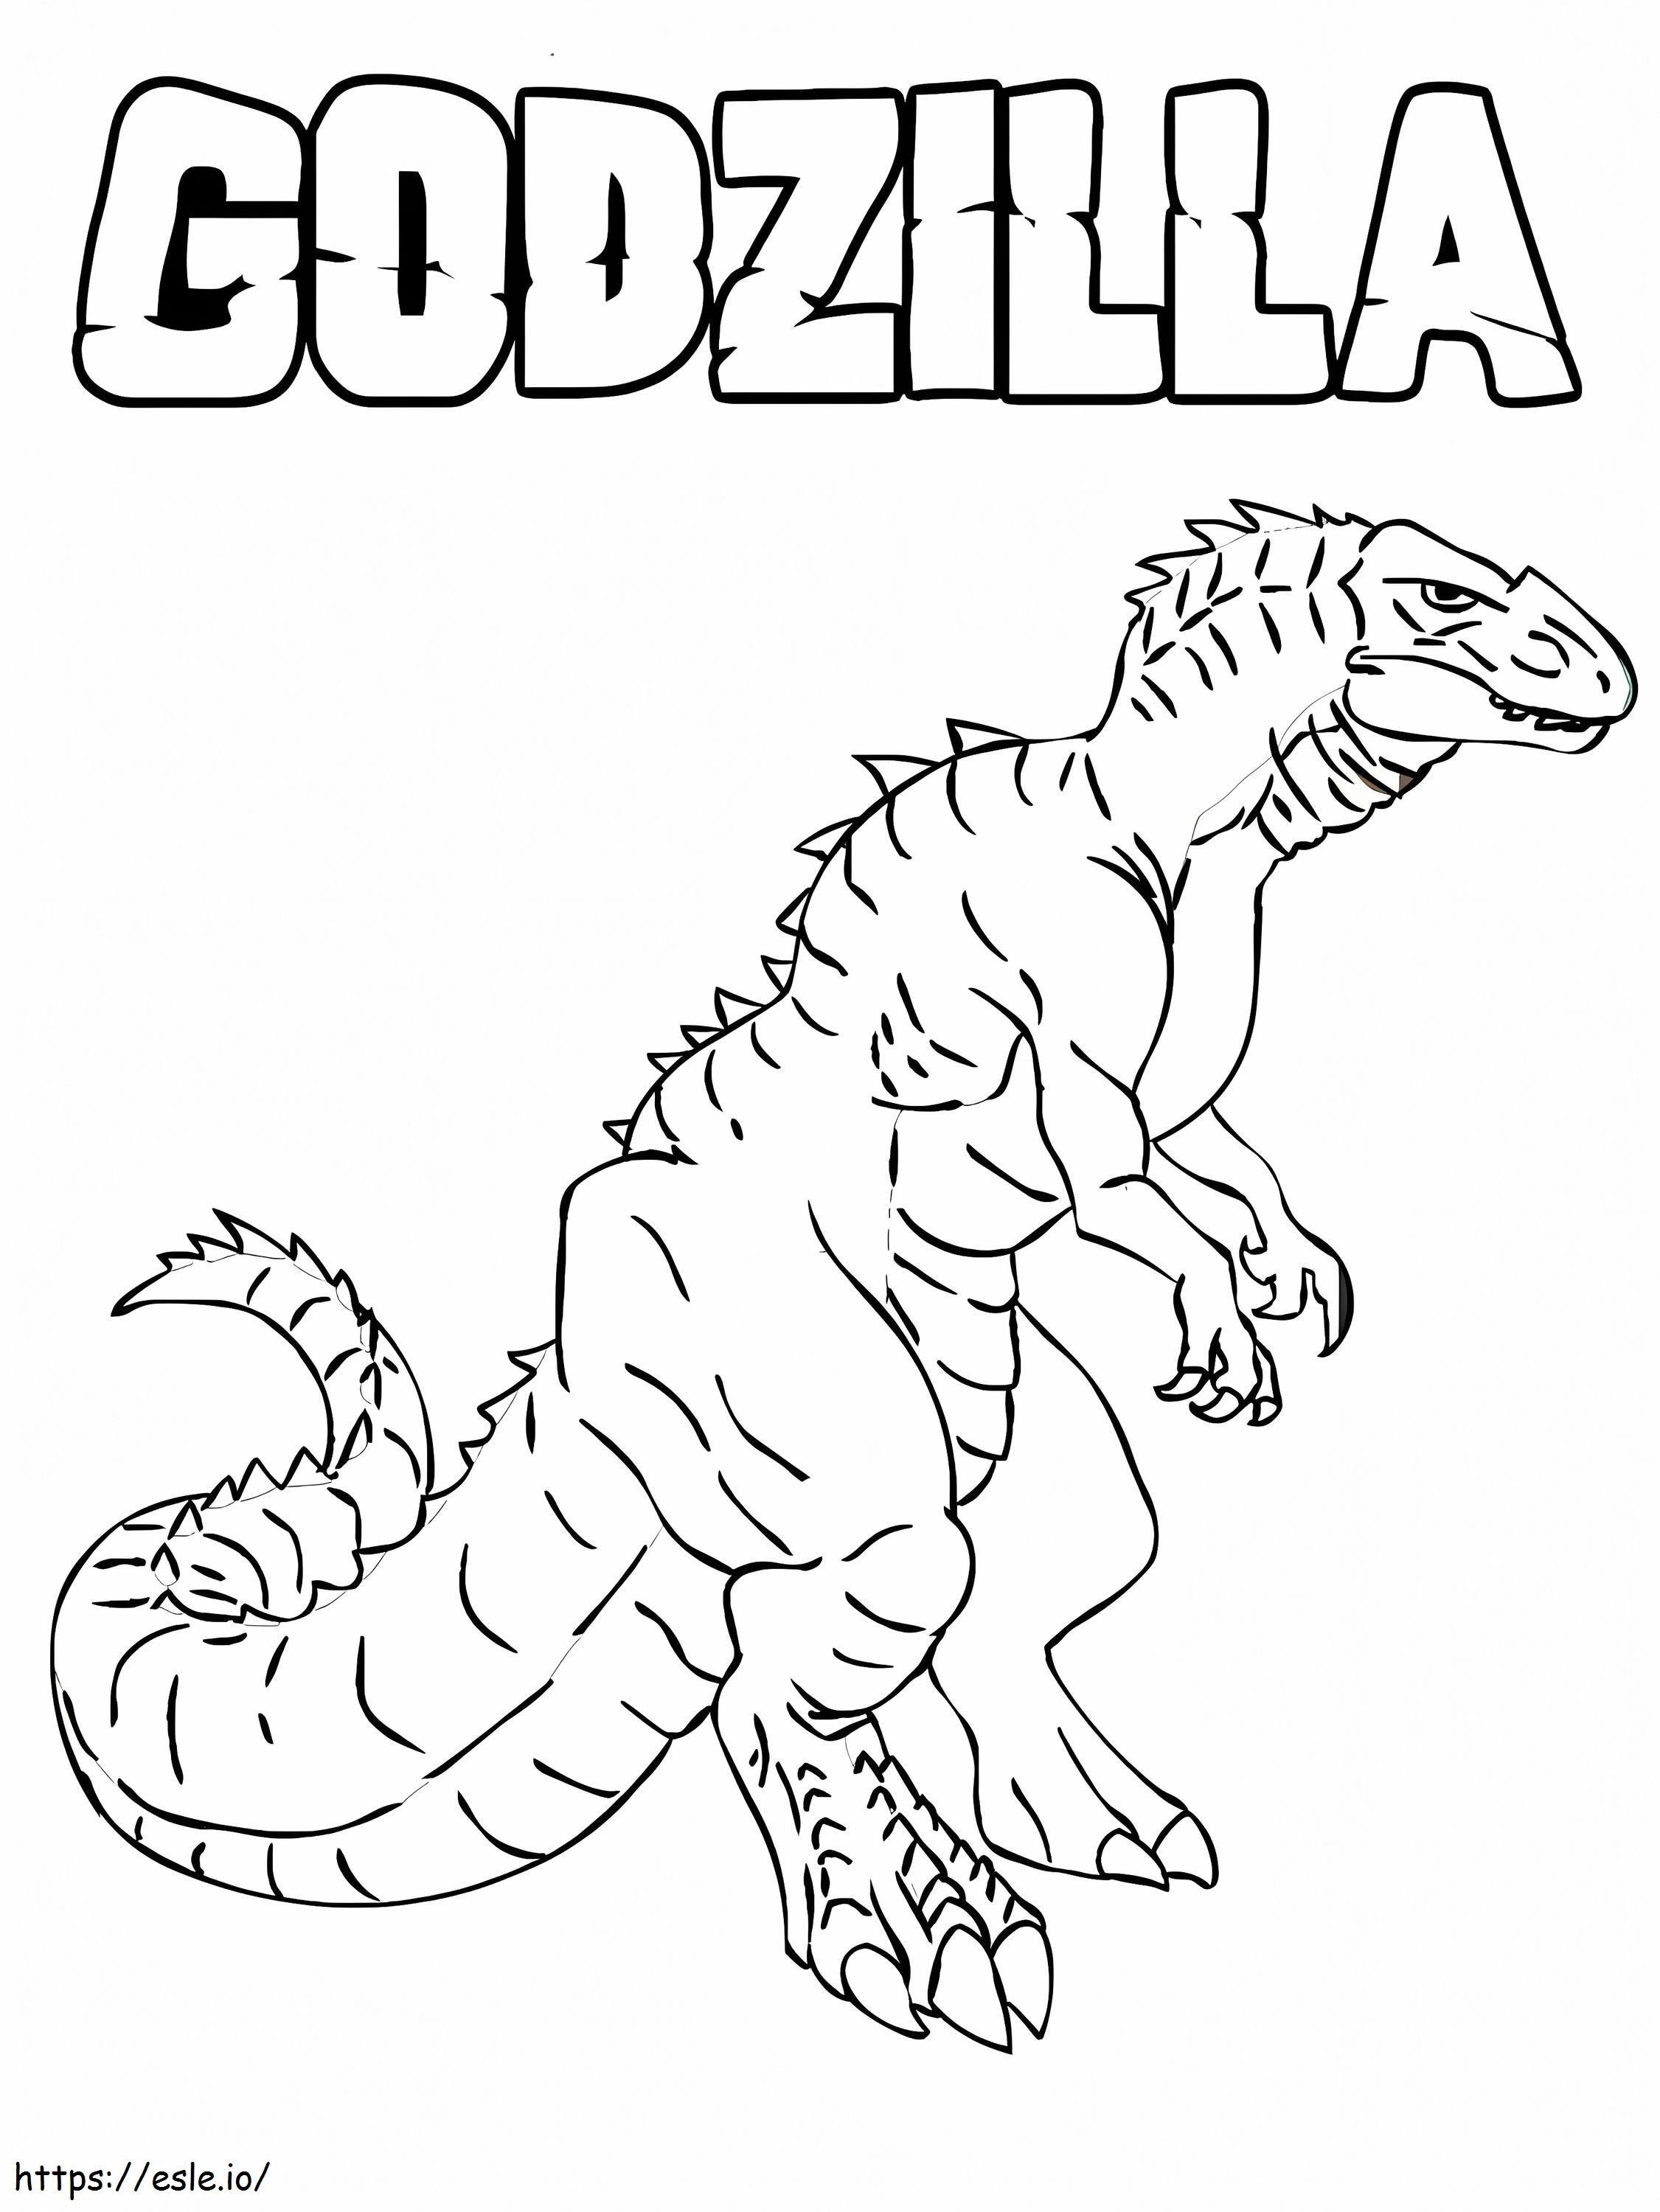 Huge Godzilla coloring page